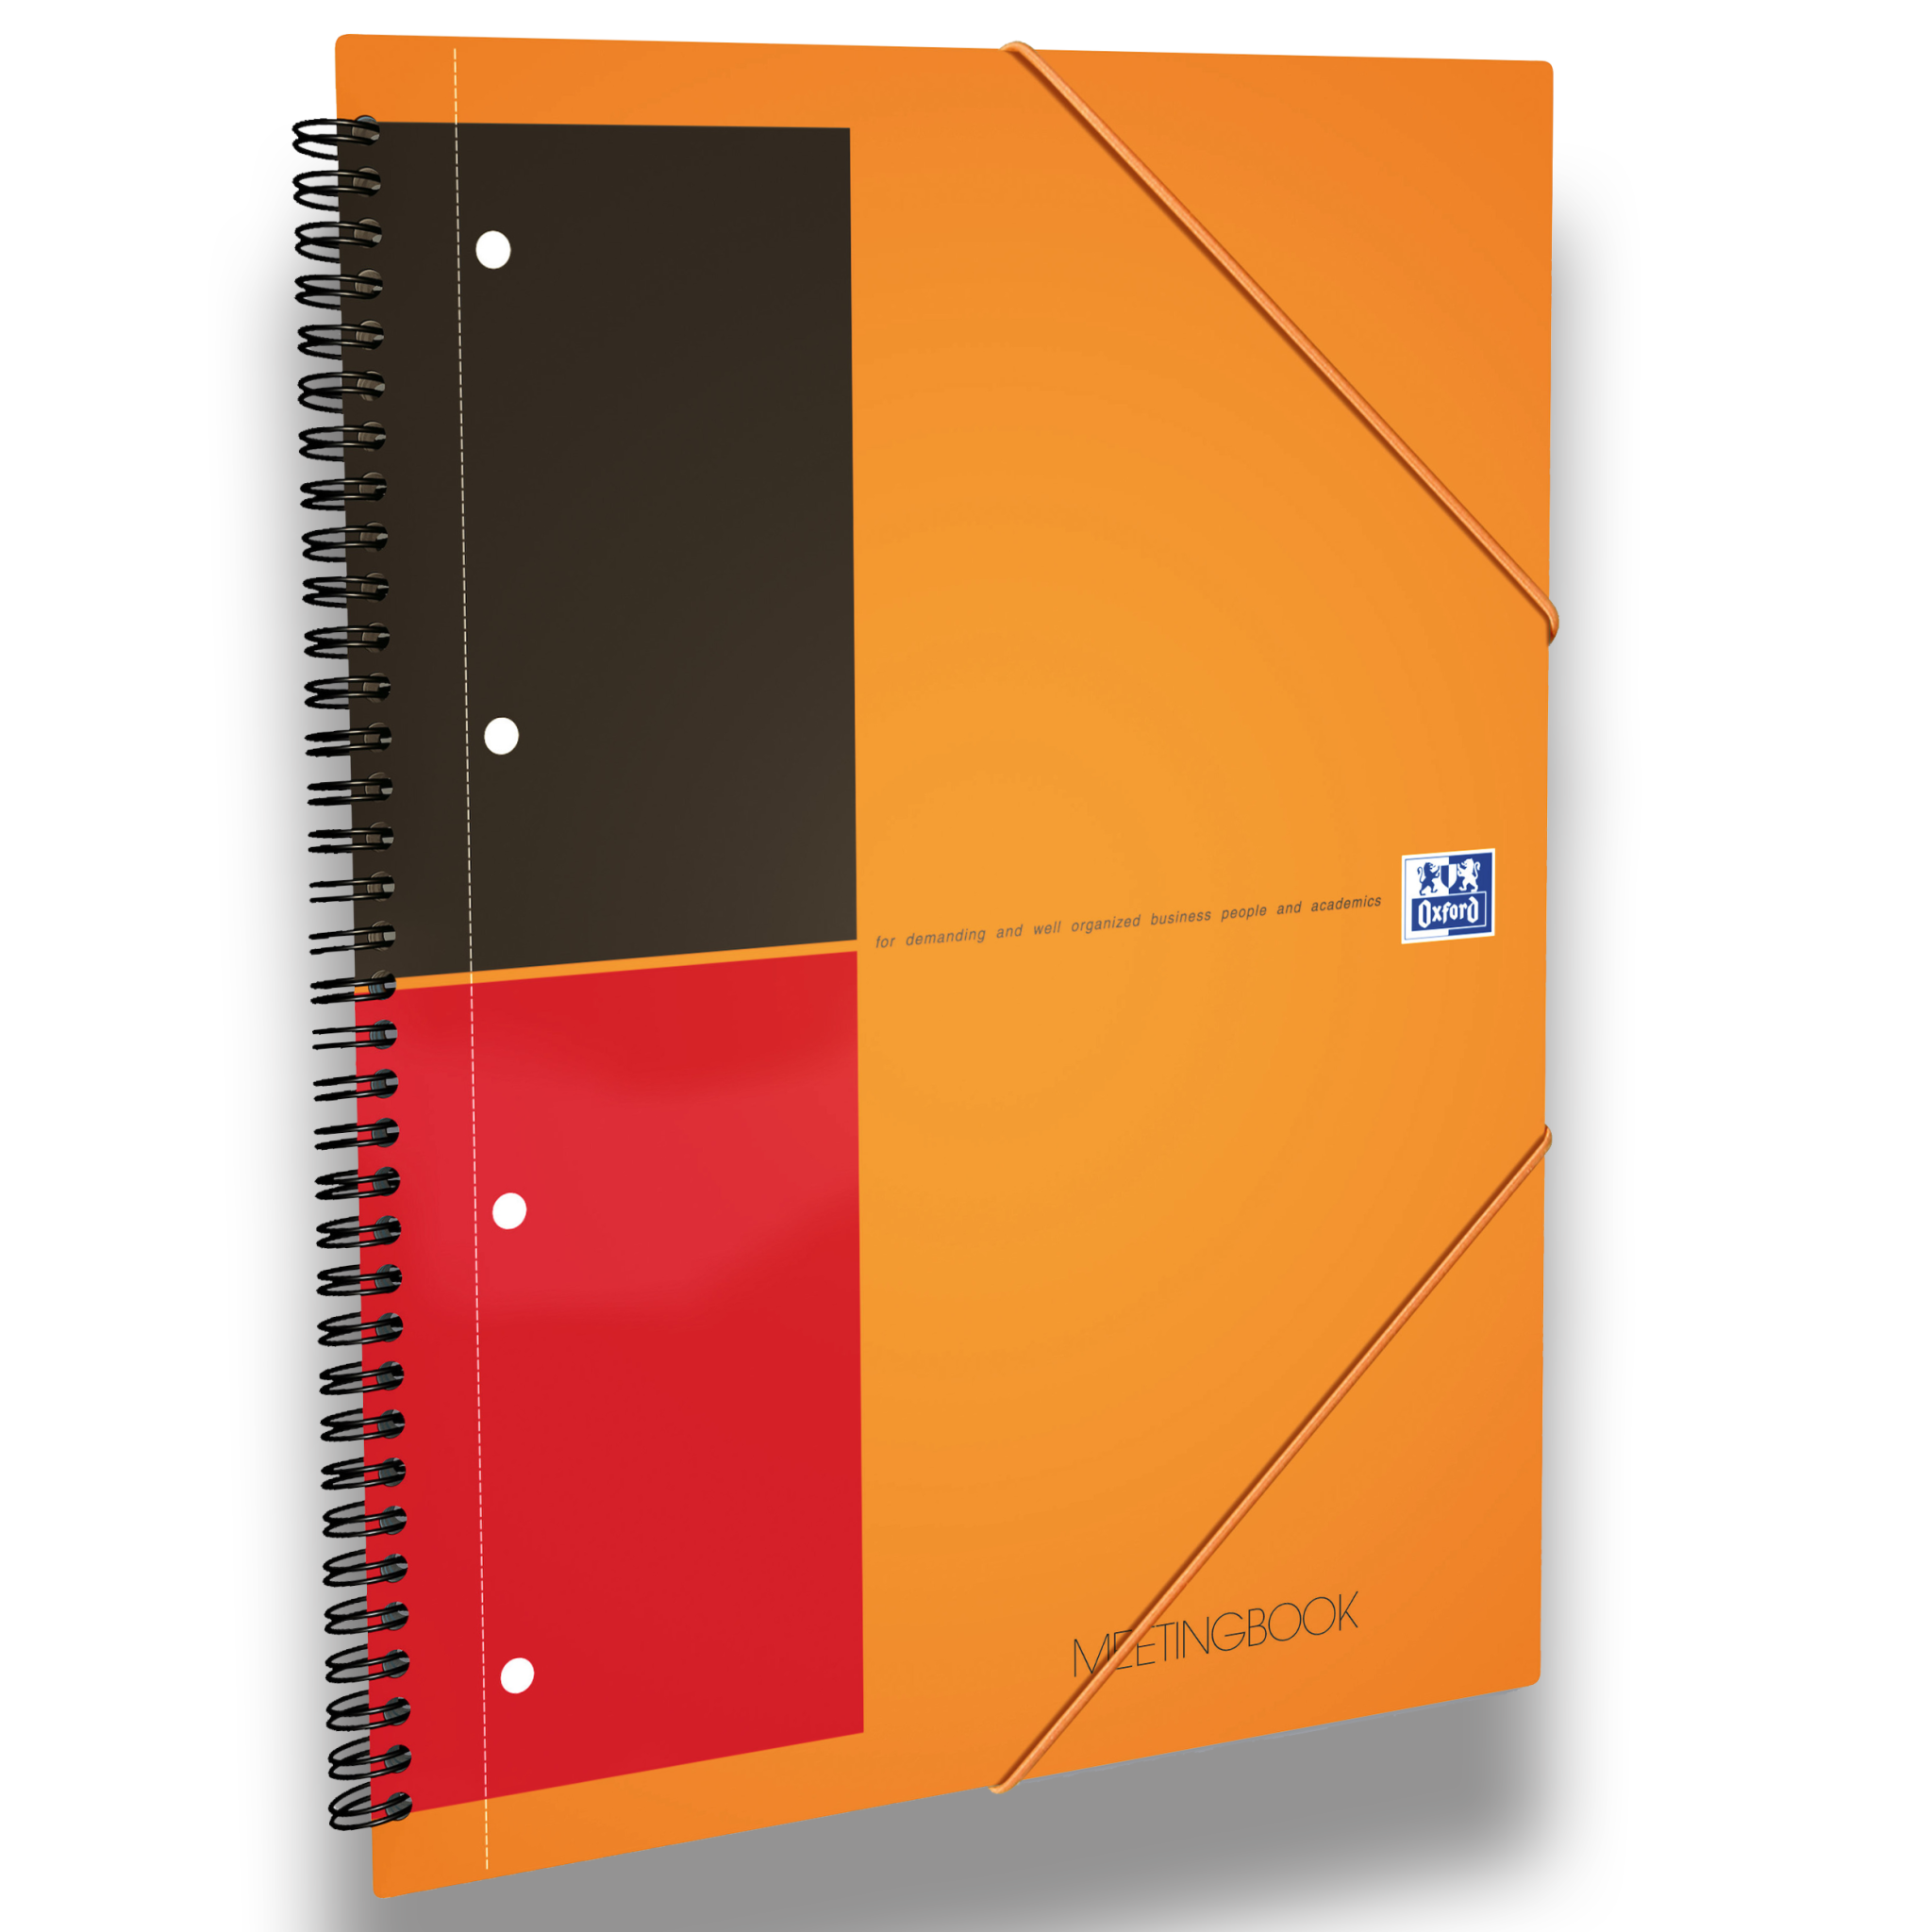 Koverbook carnet de vocabulaire reliure intégrale 11x17cm 100 pages